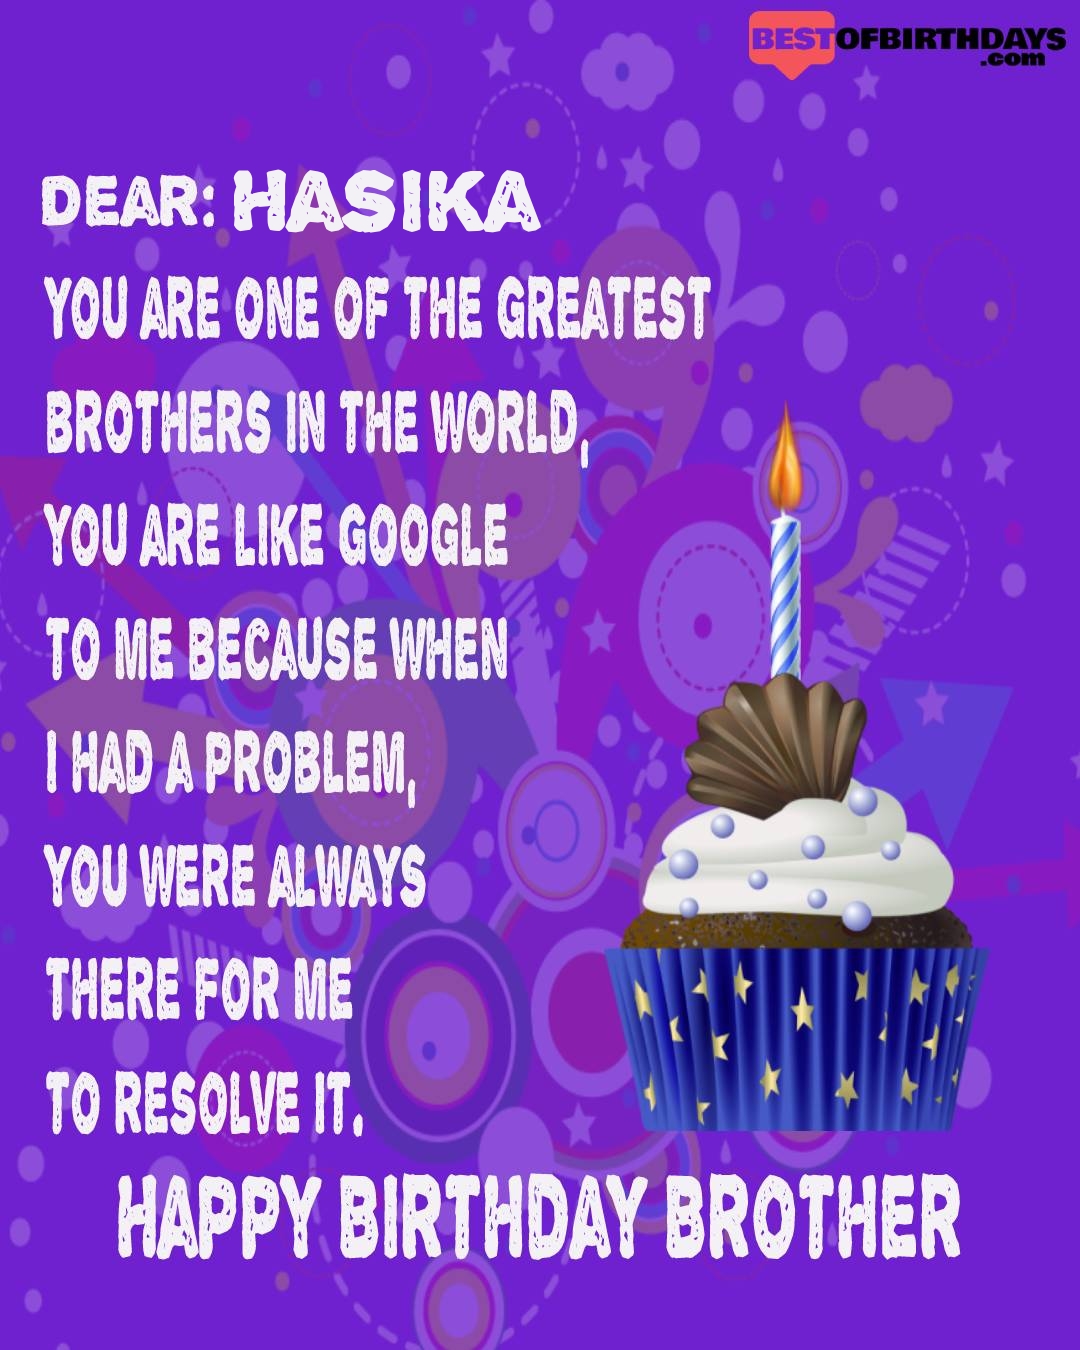 Happy birthday hasika bhai brother bro